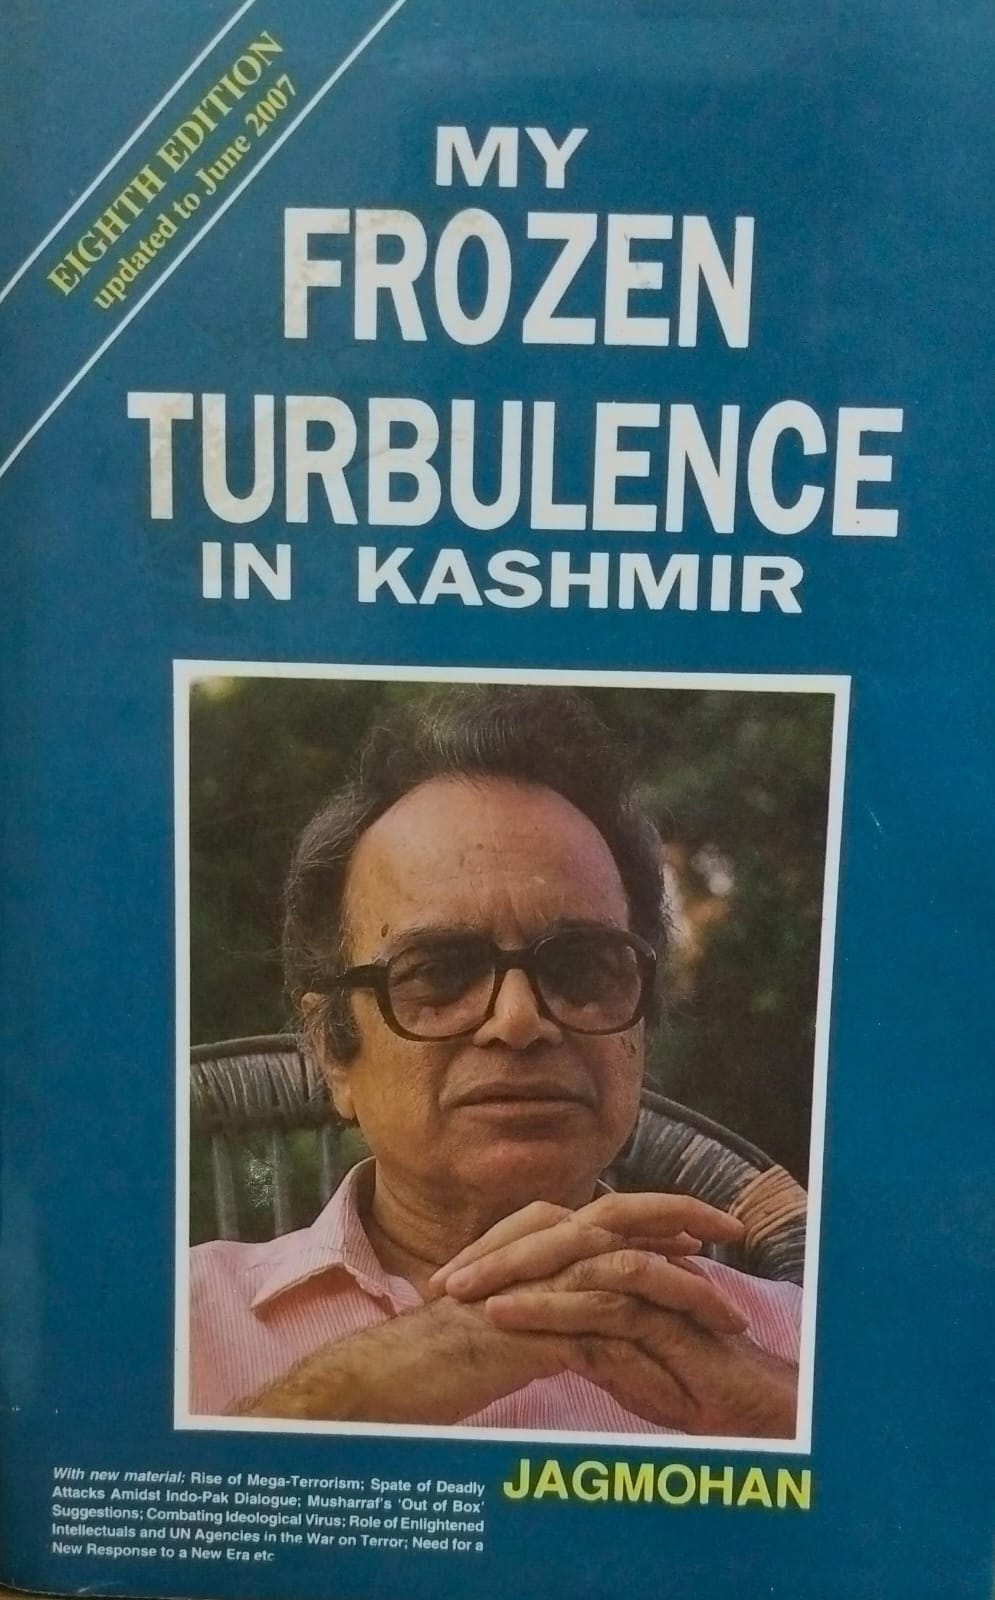 My frozen turbulence in kashmir [hardcover][rare books]